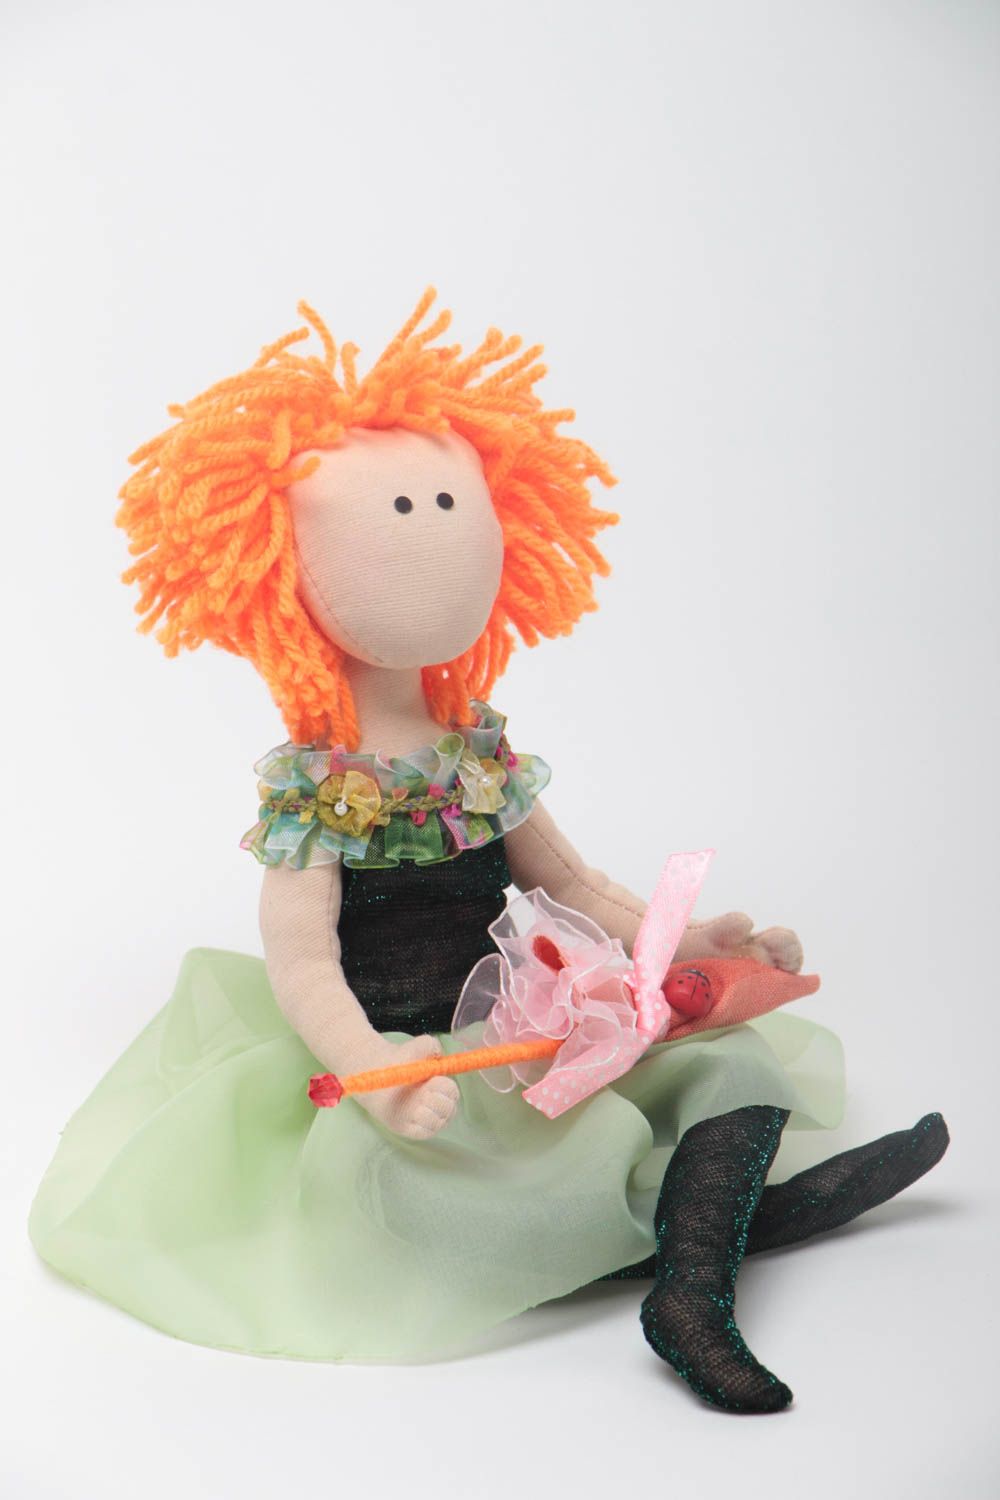 Handmade doll designer toy for children unusual doll for girls nursery decor photo 2